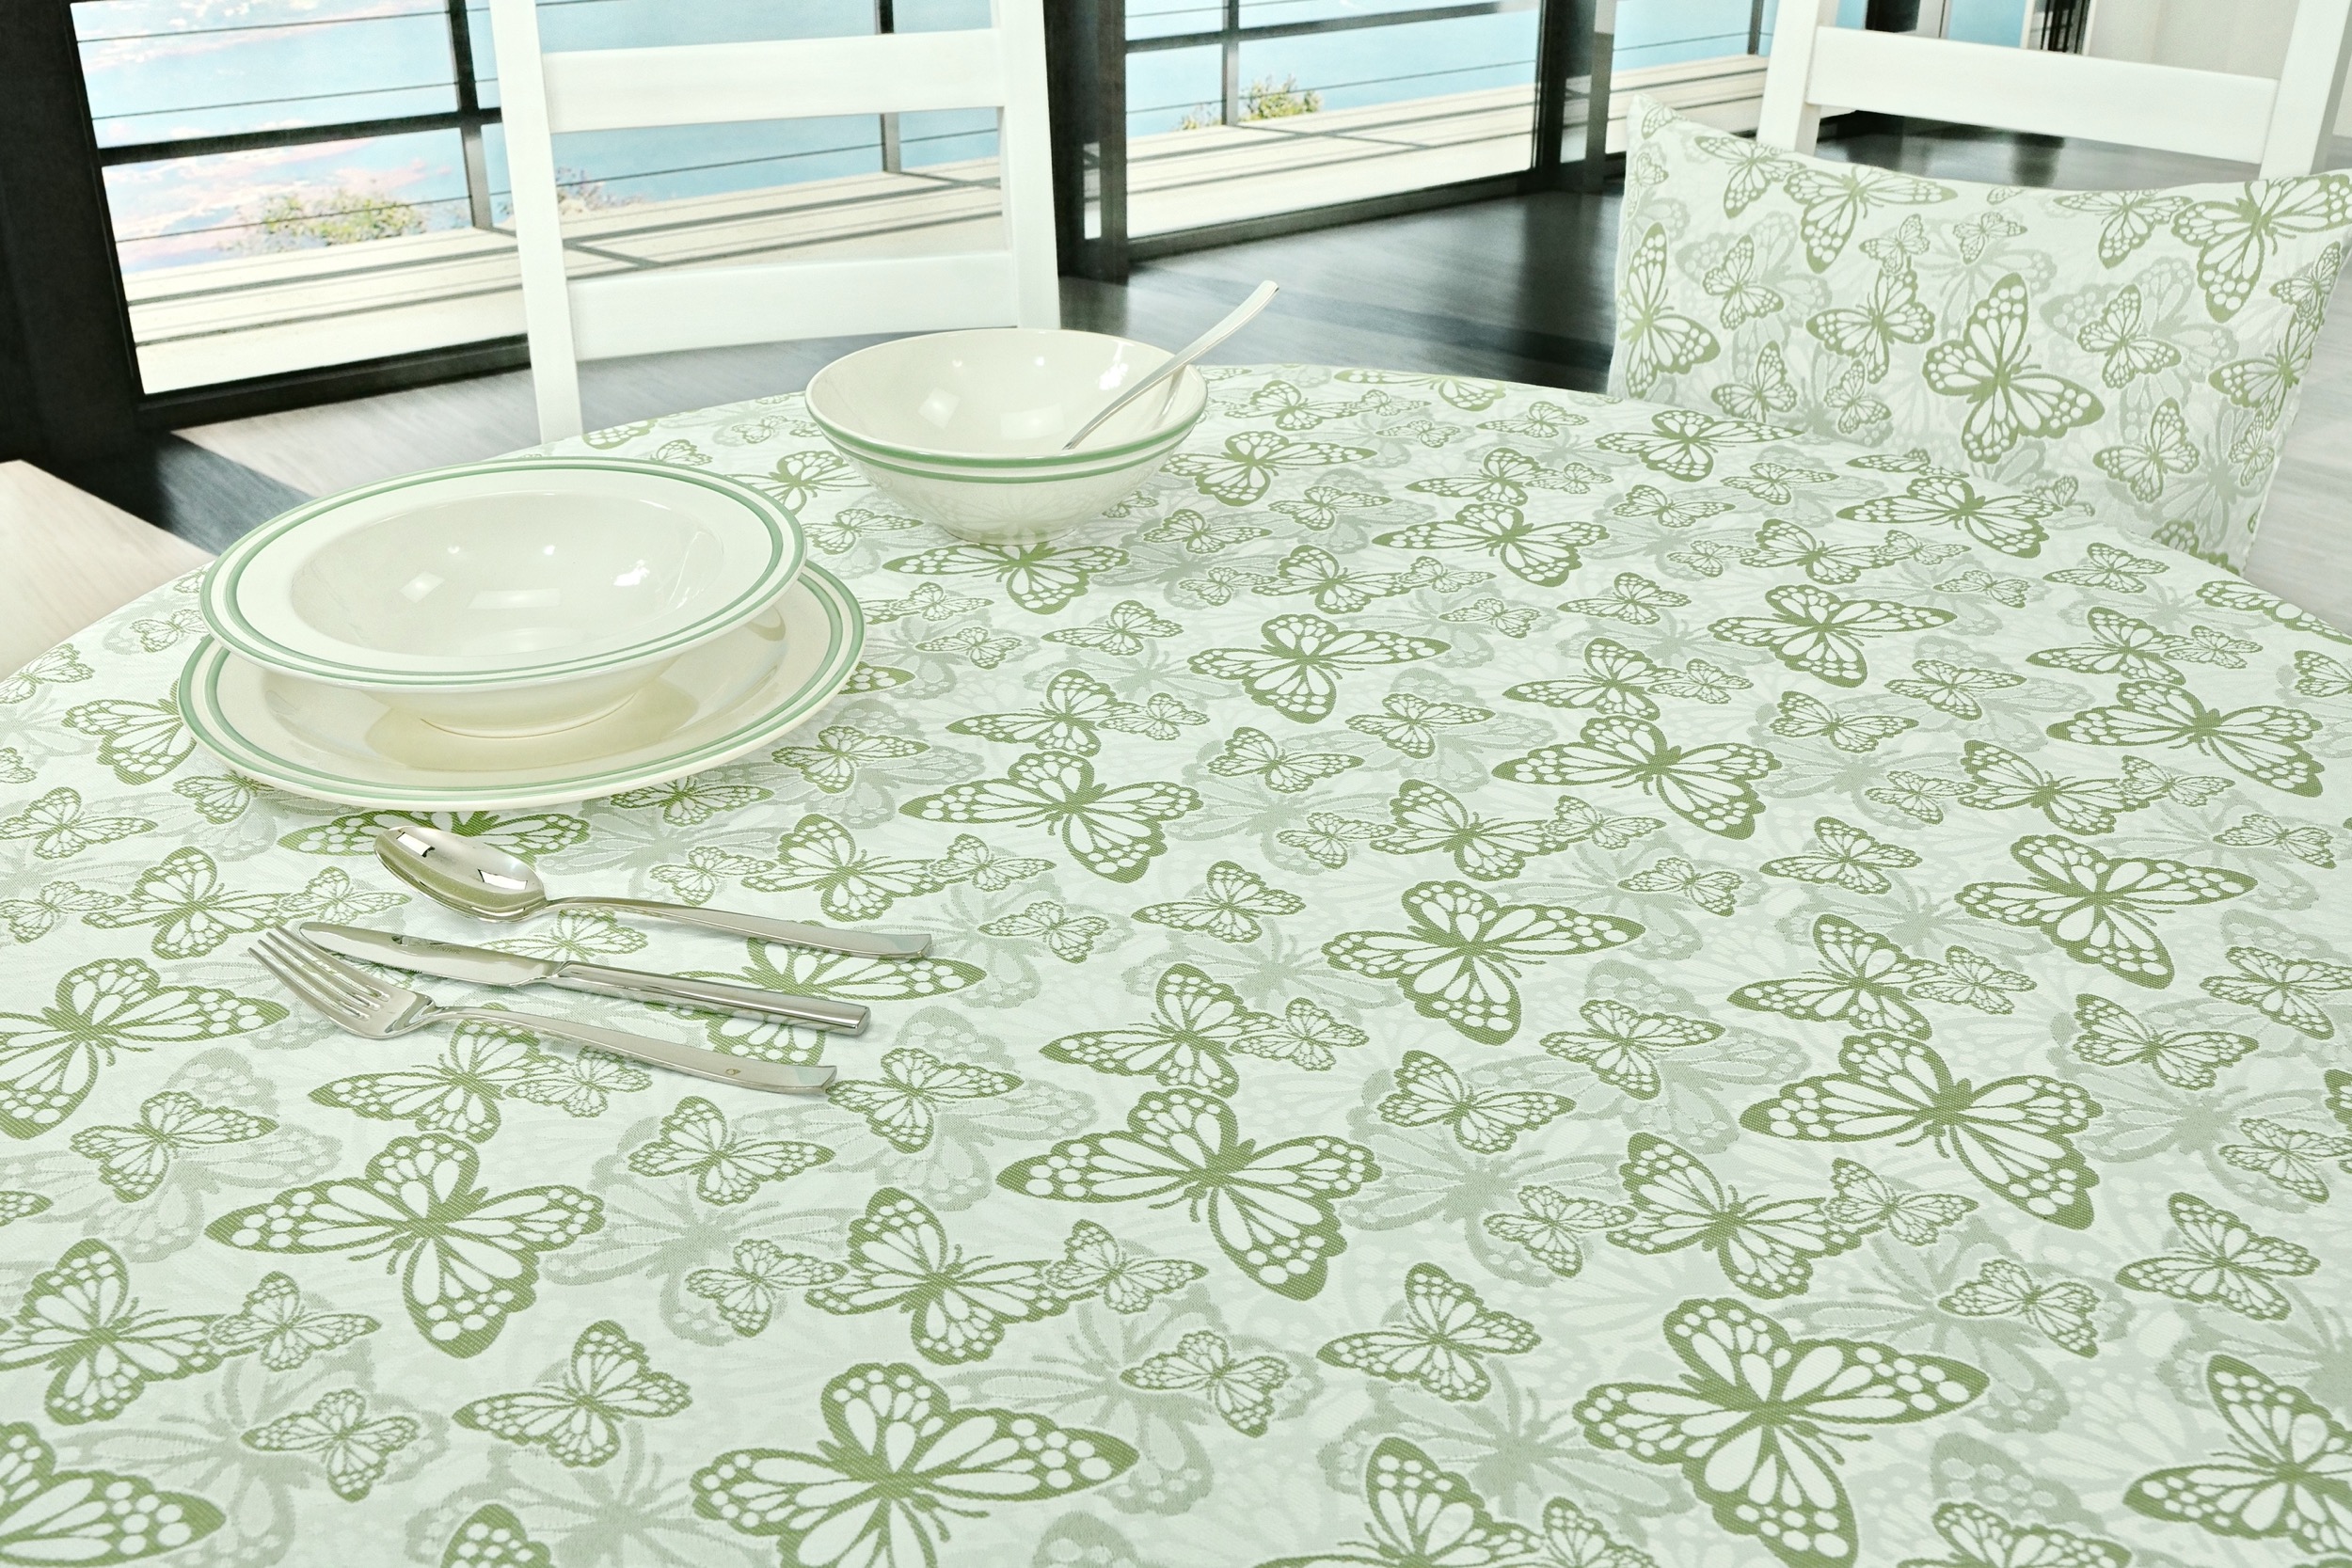 Fleckgeschützte Tischdecke Weiß Grün Muster Springtime Breite 130 cm OVAL